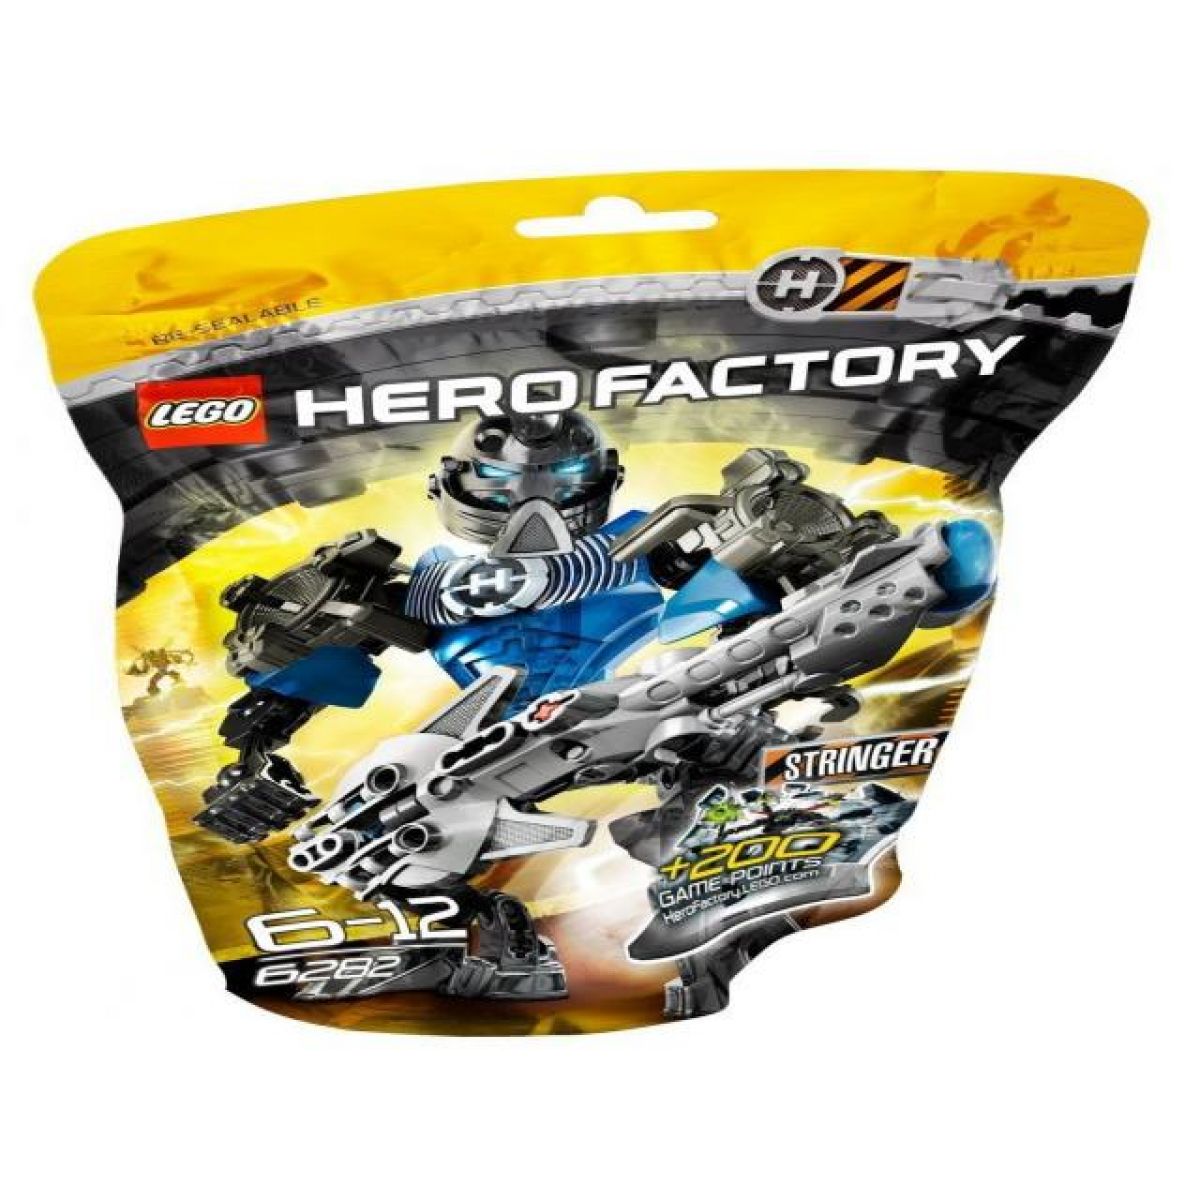 LEGO 6282 Hero Factory Stringer